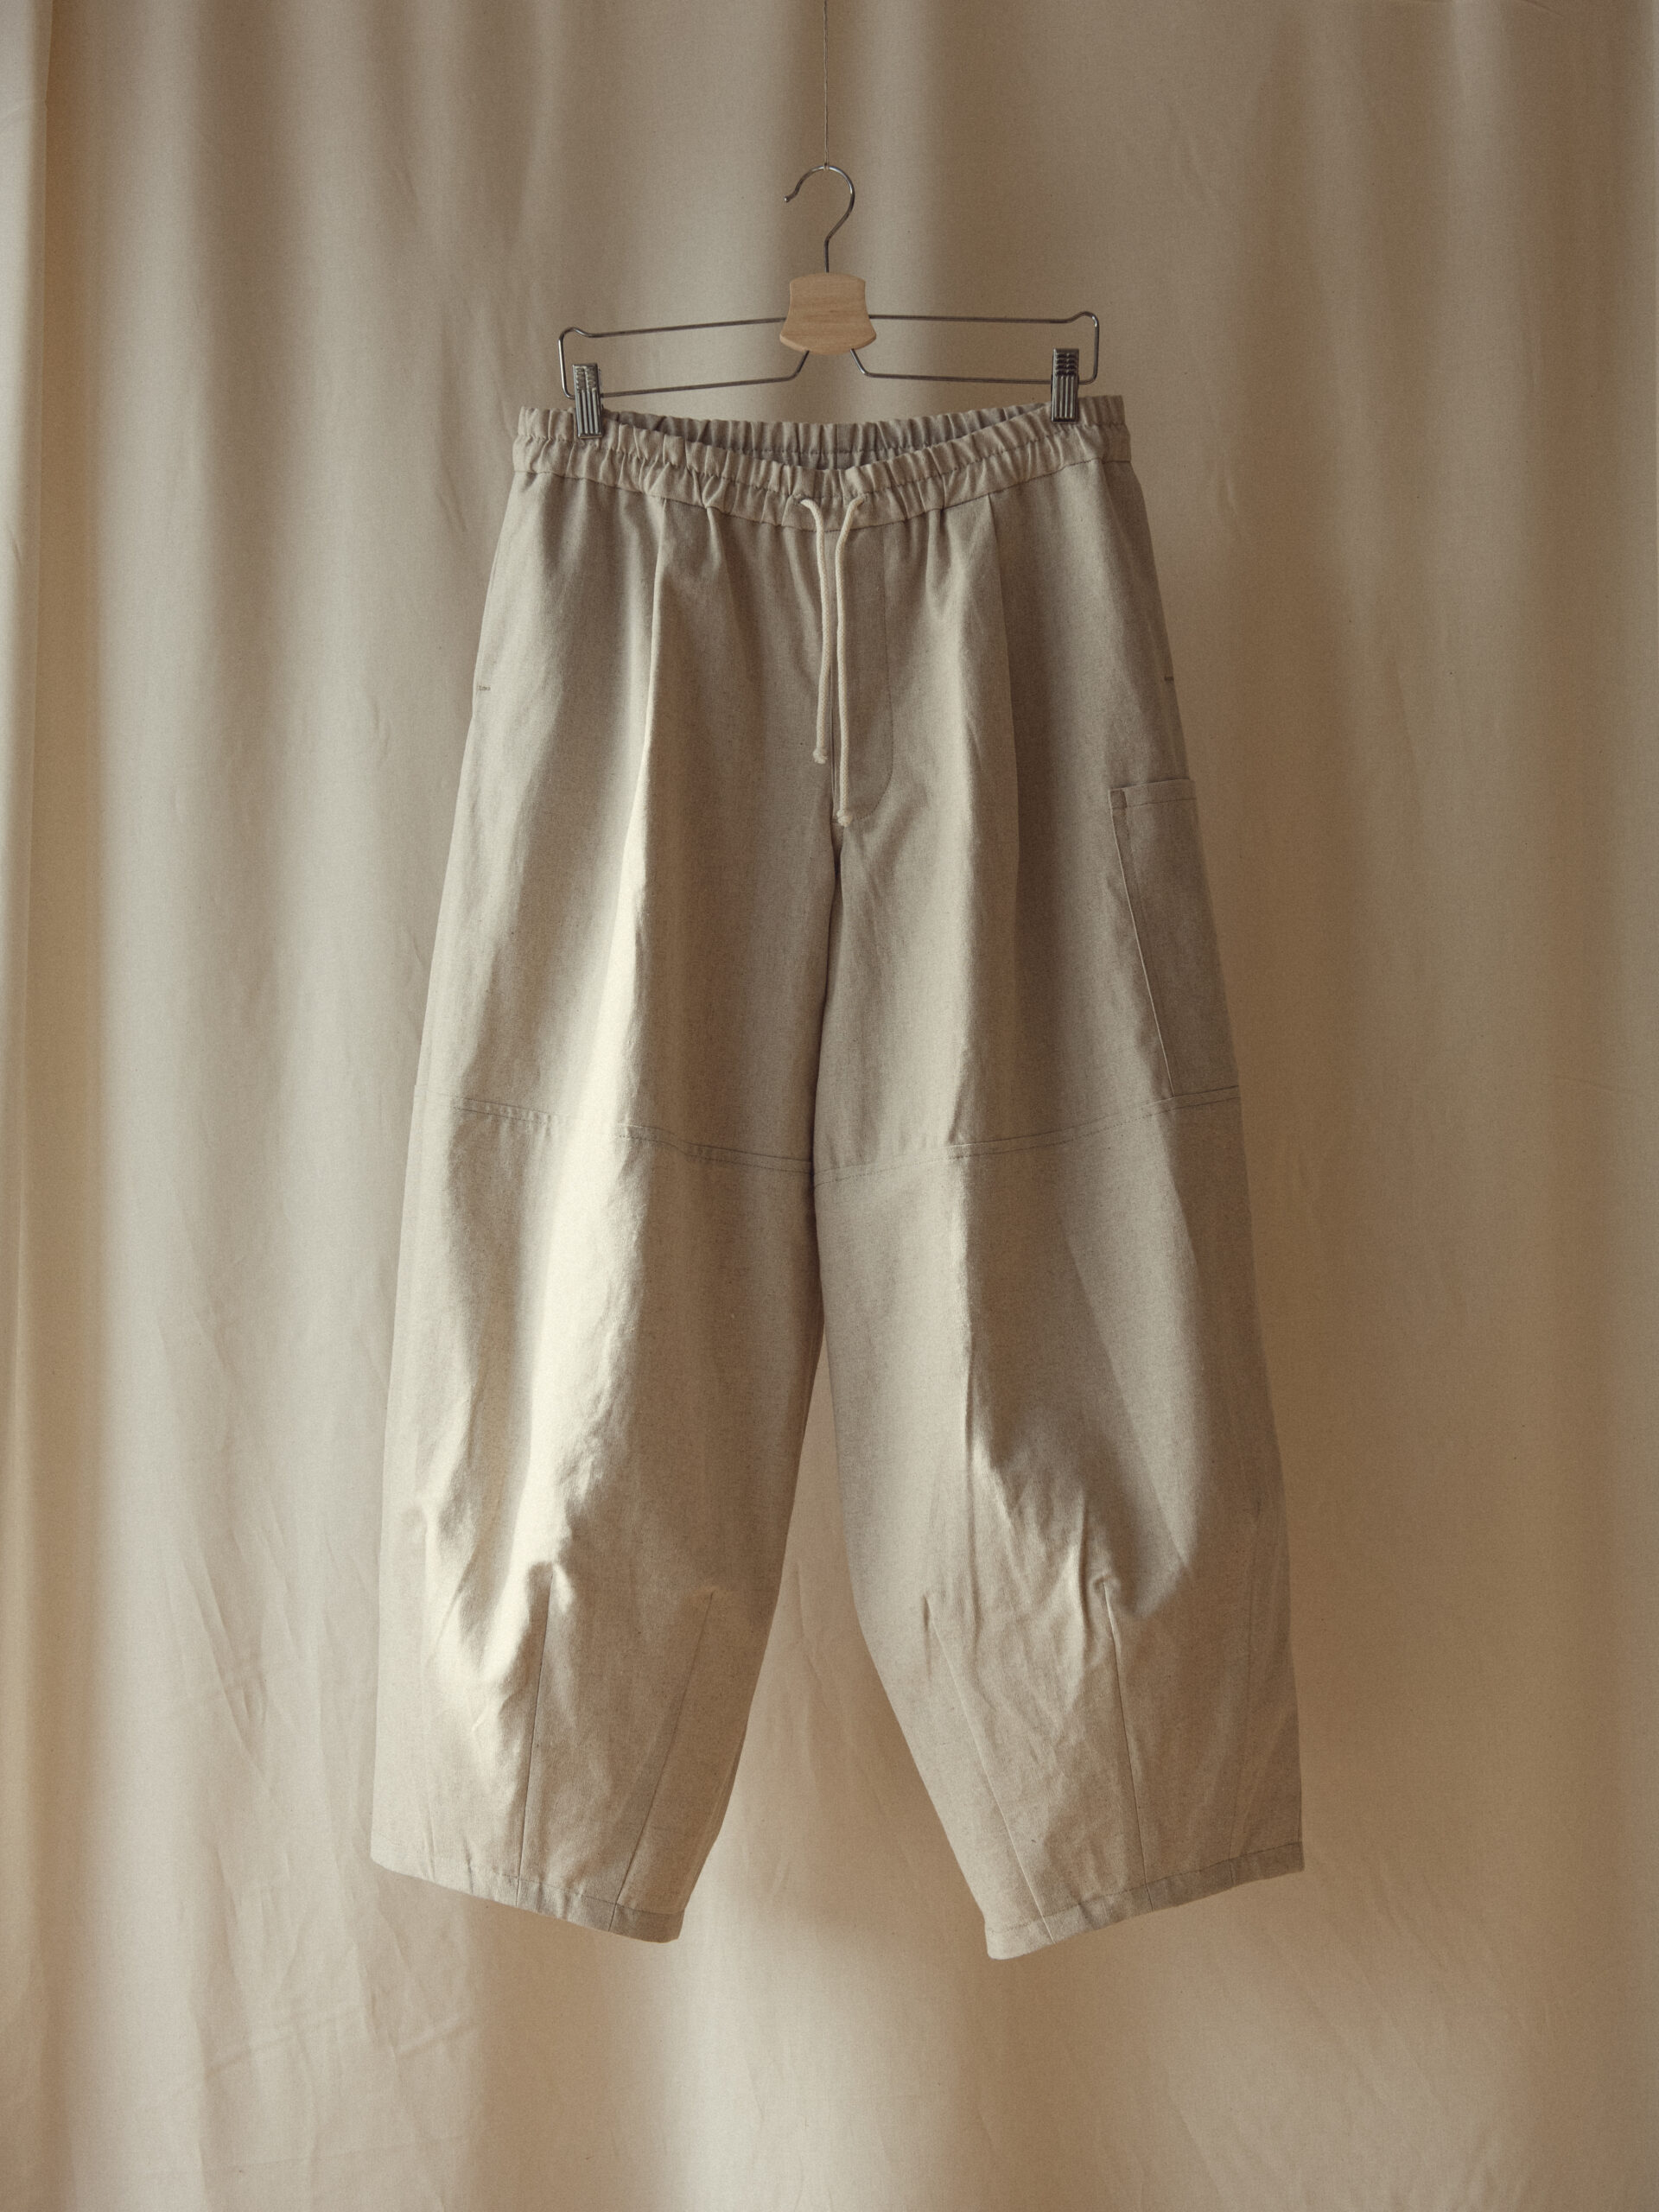 ORGANIC INDIGO DYE Cotton Pattern Pants | Hippie Trousers | Lounge Trousers